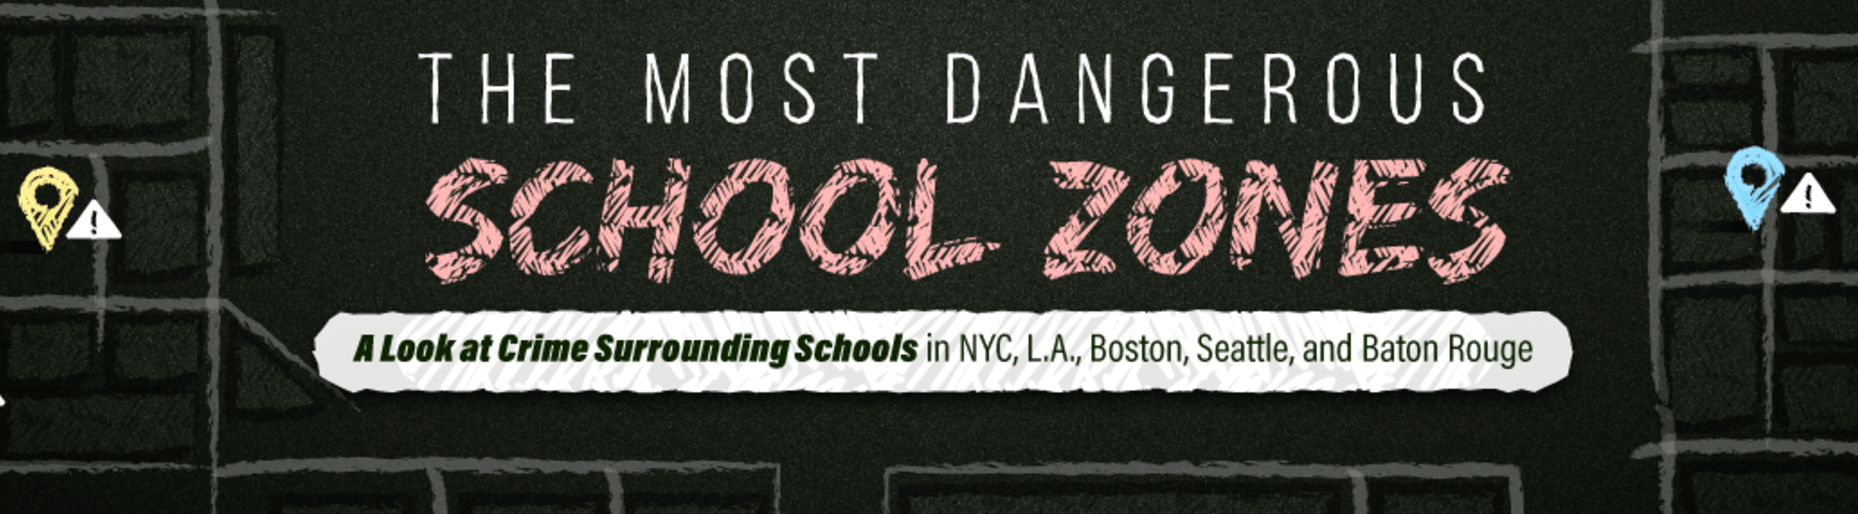 The Most Dangerous School Zones